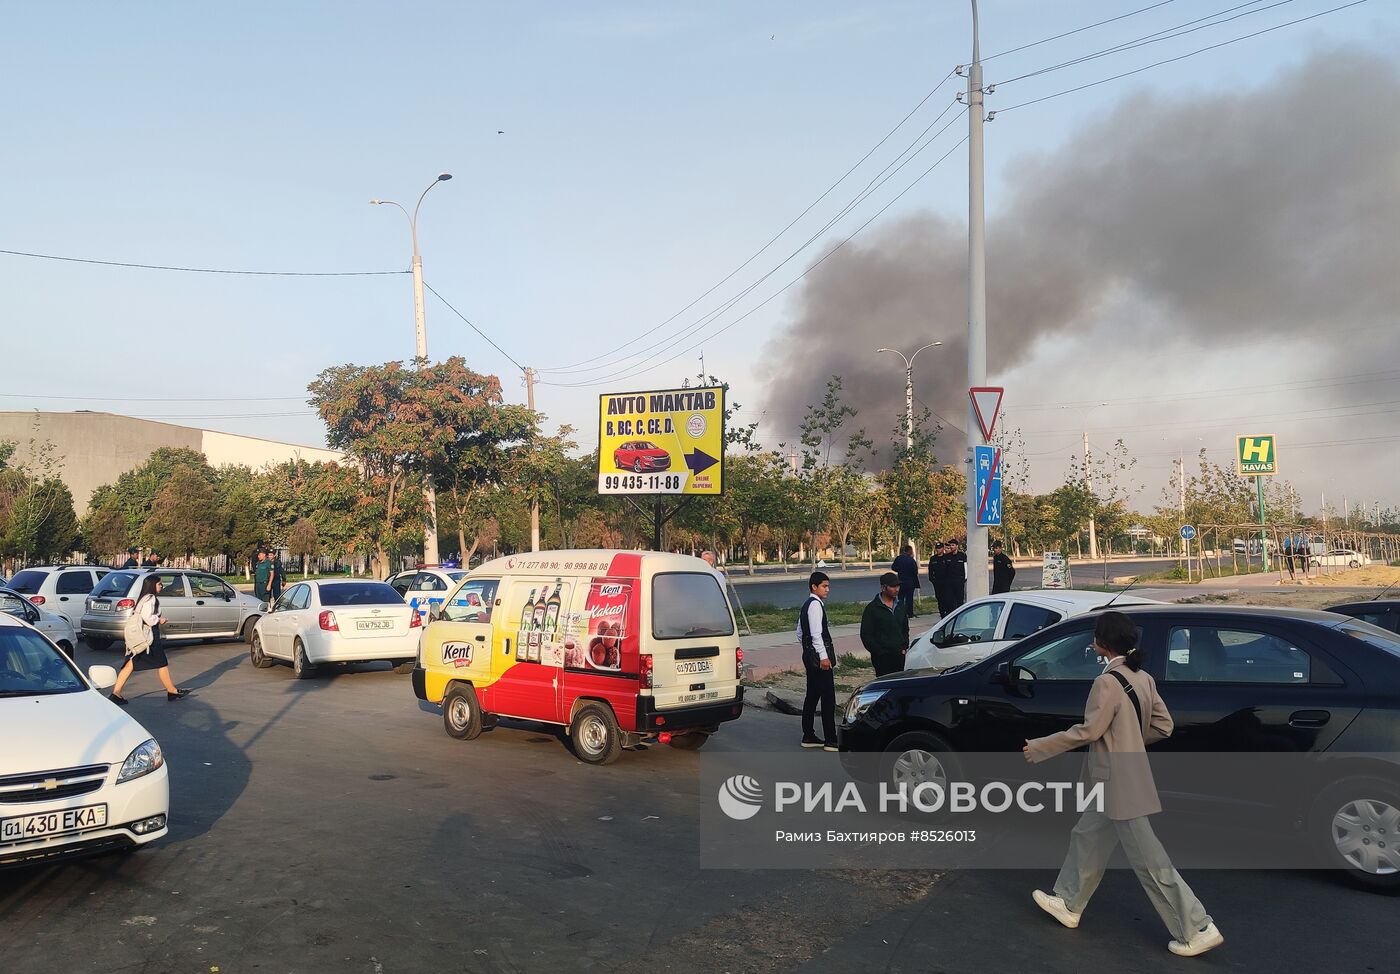 Взрыв произошел на складе в Ташкенте